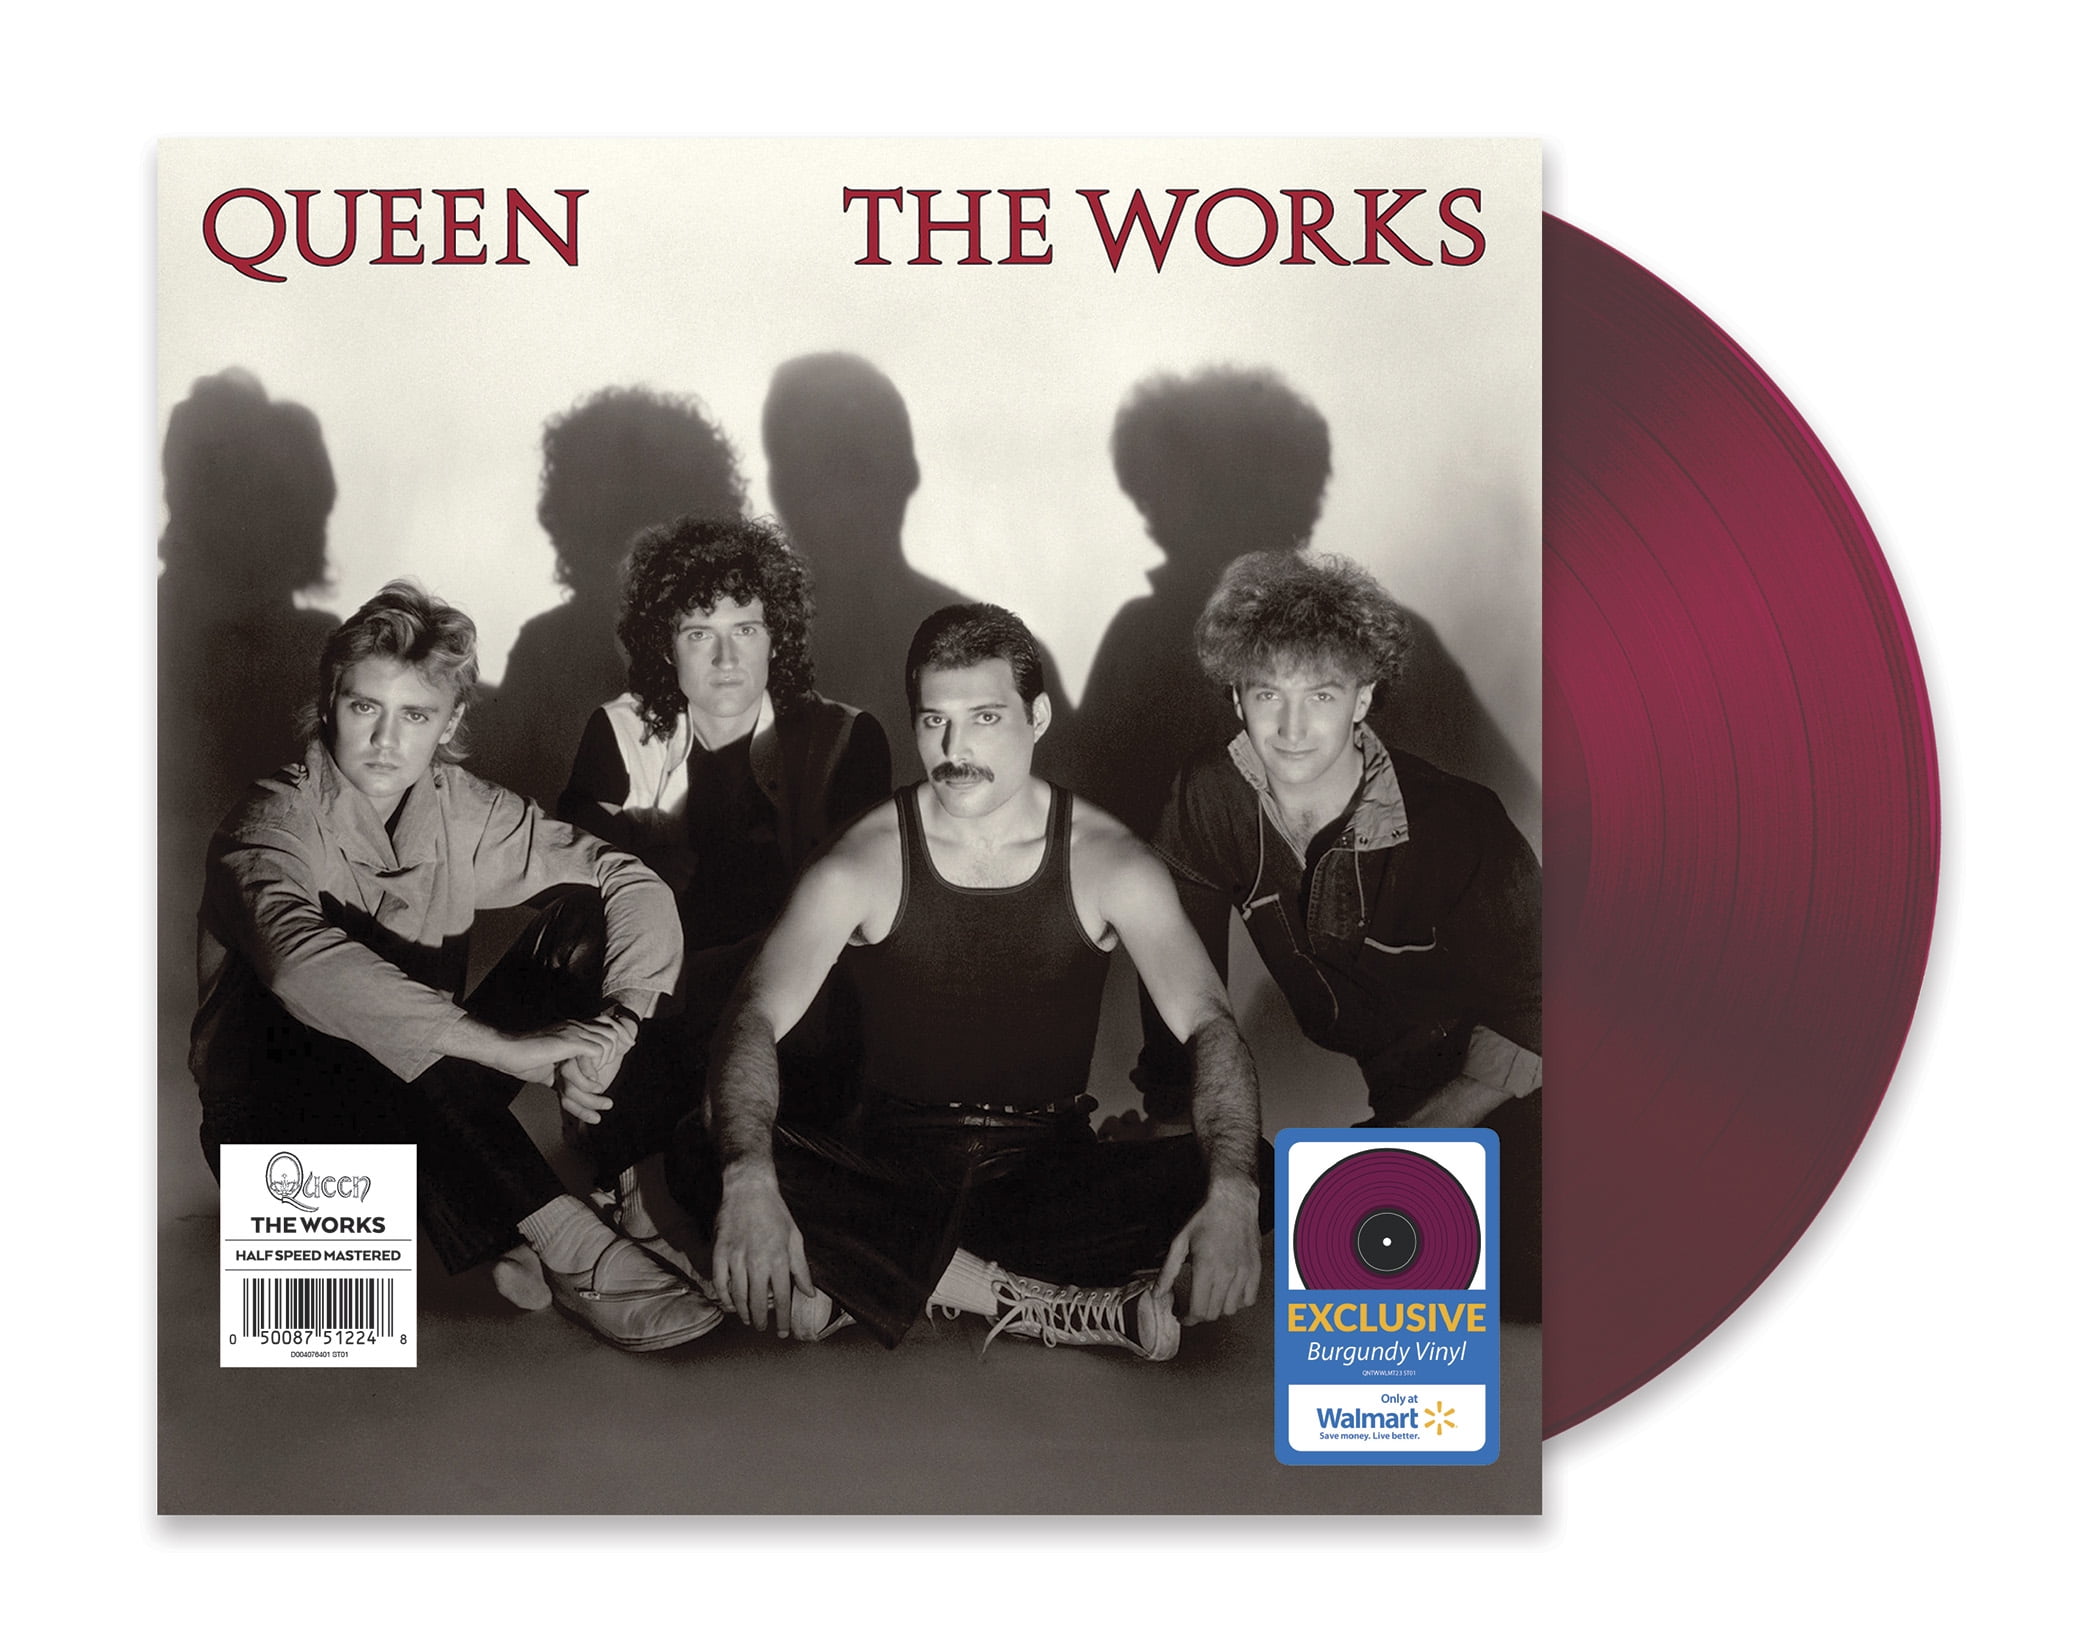 Queen & Adam Lambert - The Works (Walmart Exclusive) - Rock - Vinyl  [Exclusive]